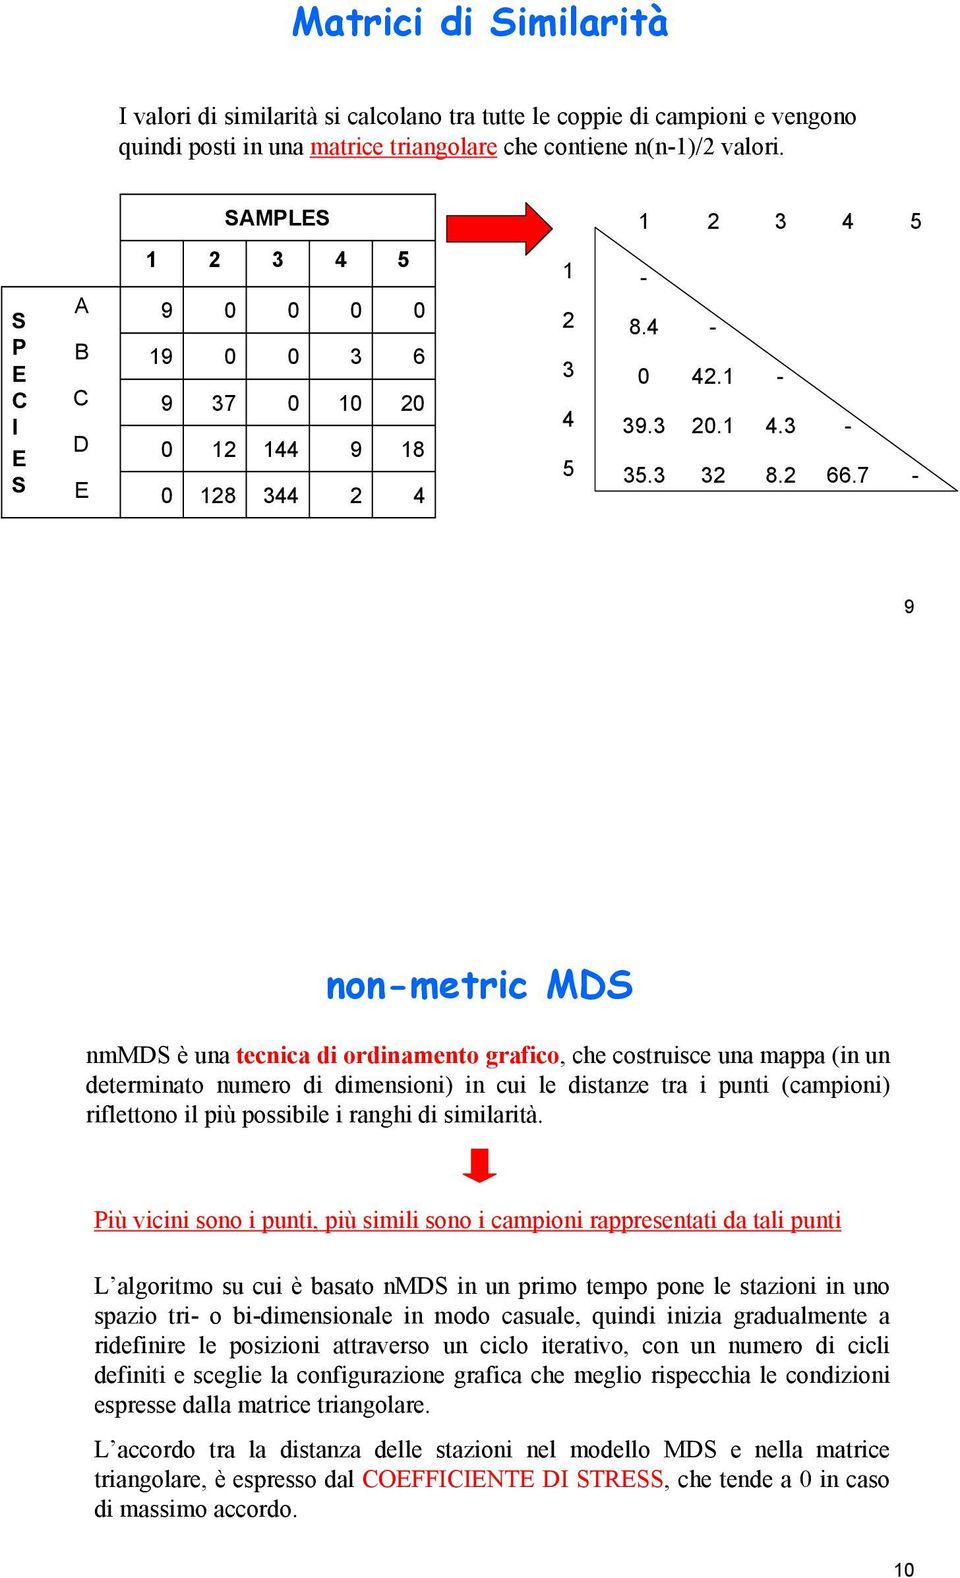 . -. 8. -.7 - non-metric MDS nmmds è una tecnica di ordinamento grafico, che costruisce una mappa (in un determinato numero di dimensioni) in cui le distanze tra i punti (campioni) riflettono il più